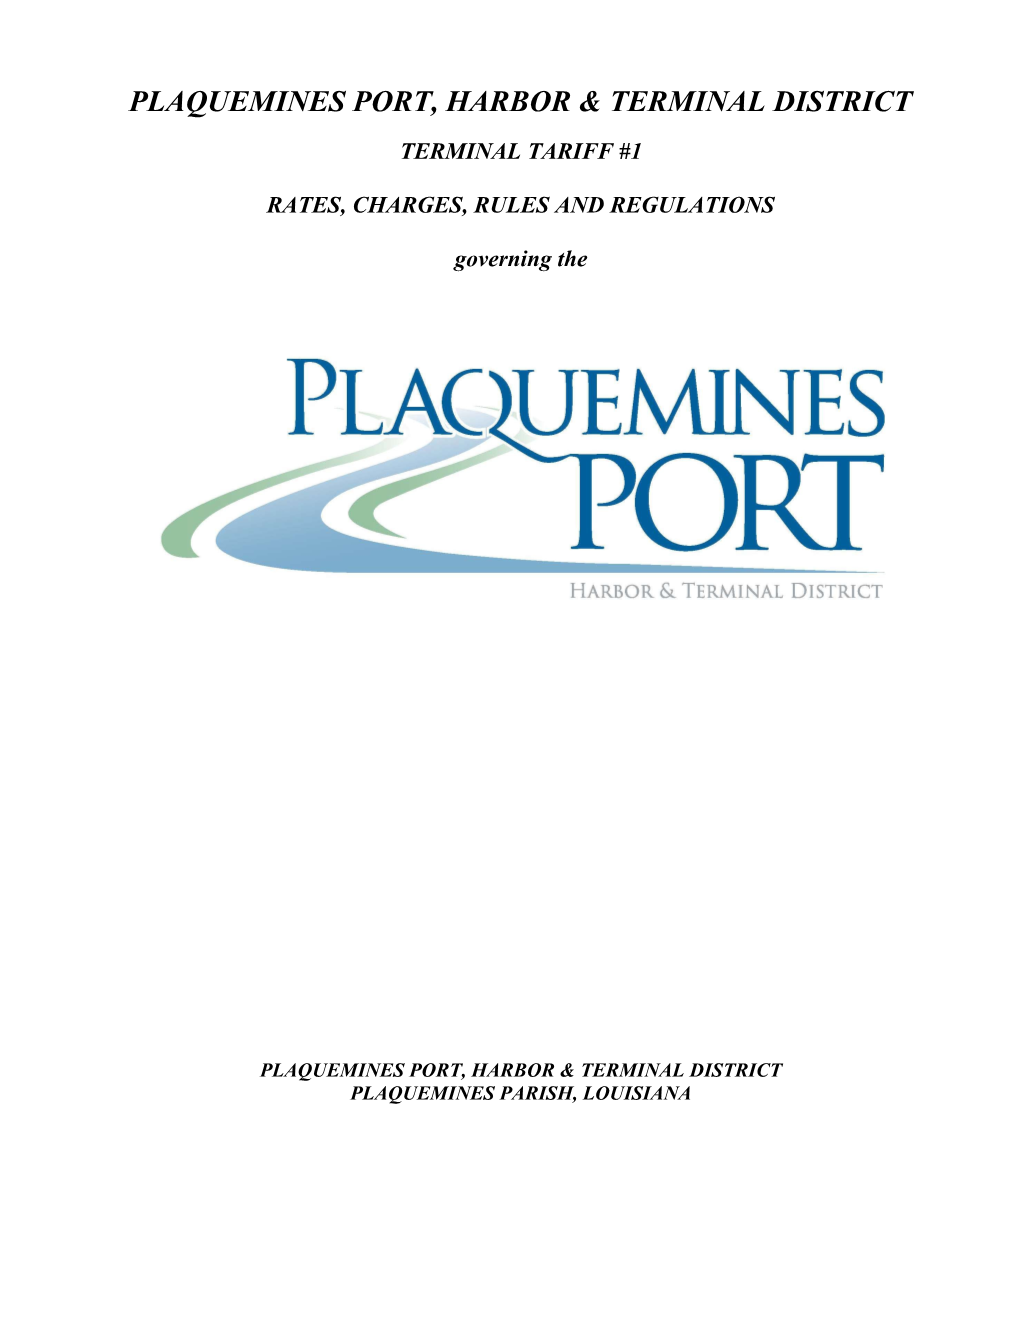 Plaquemines Port, Harbor & Terminal District